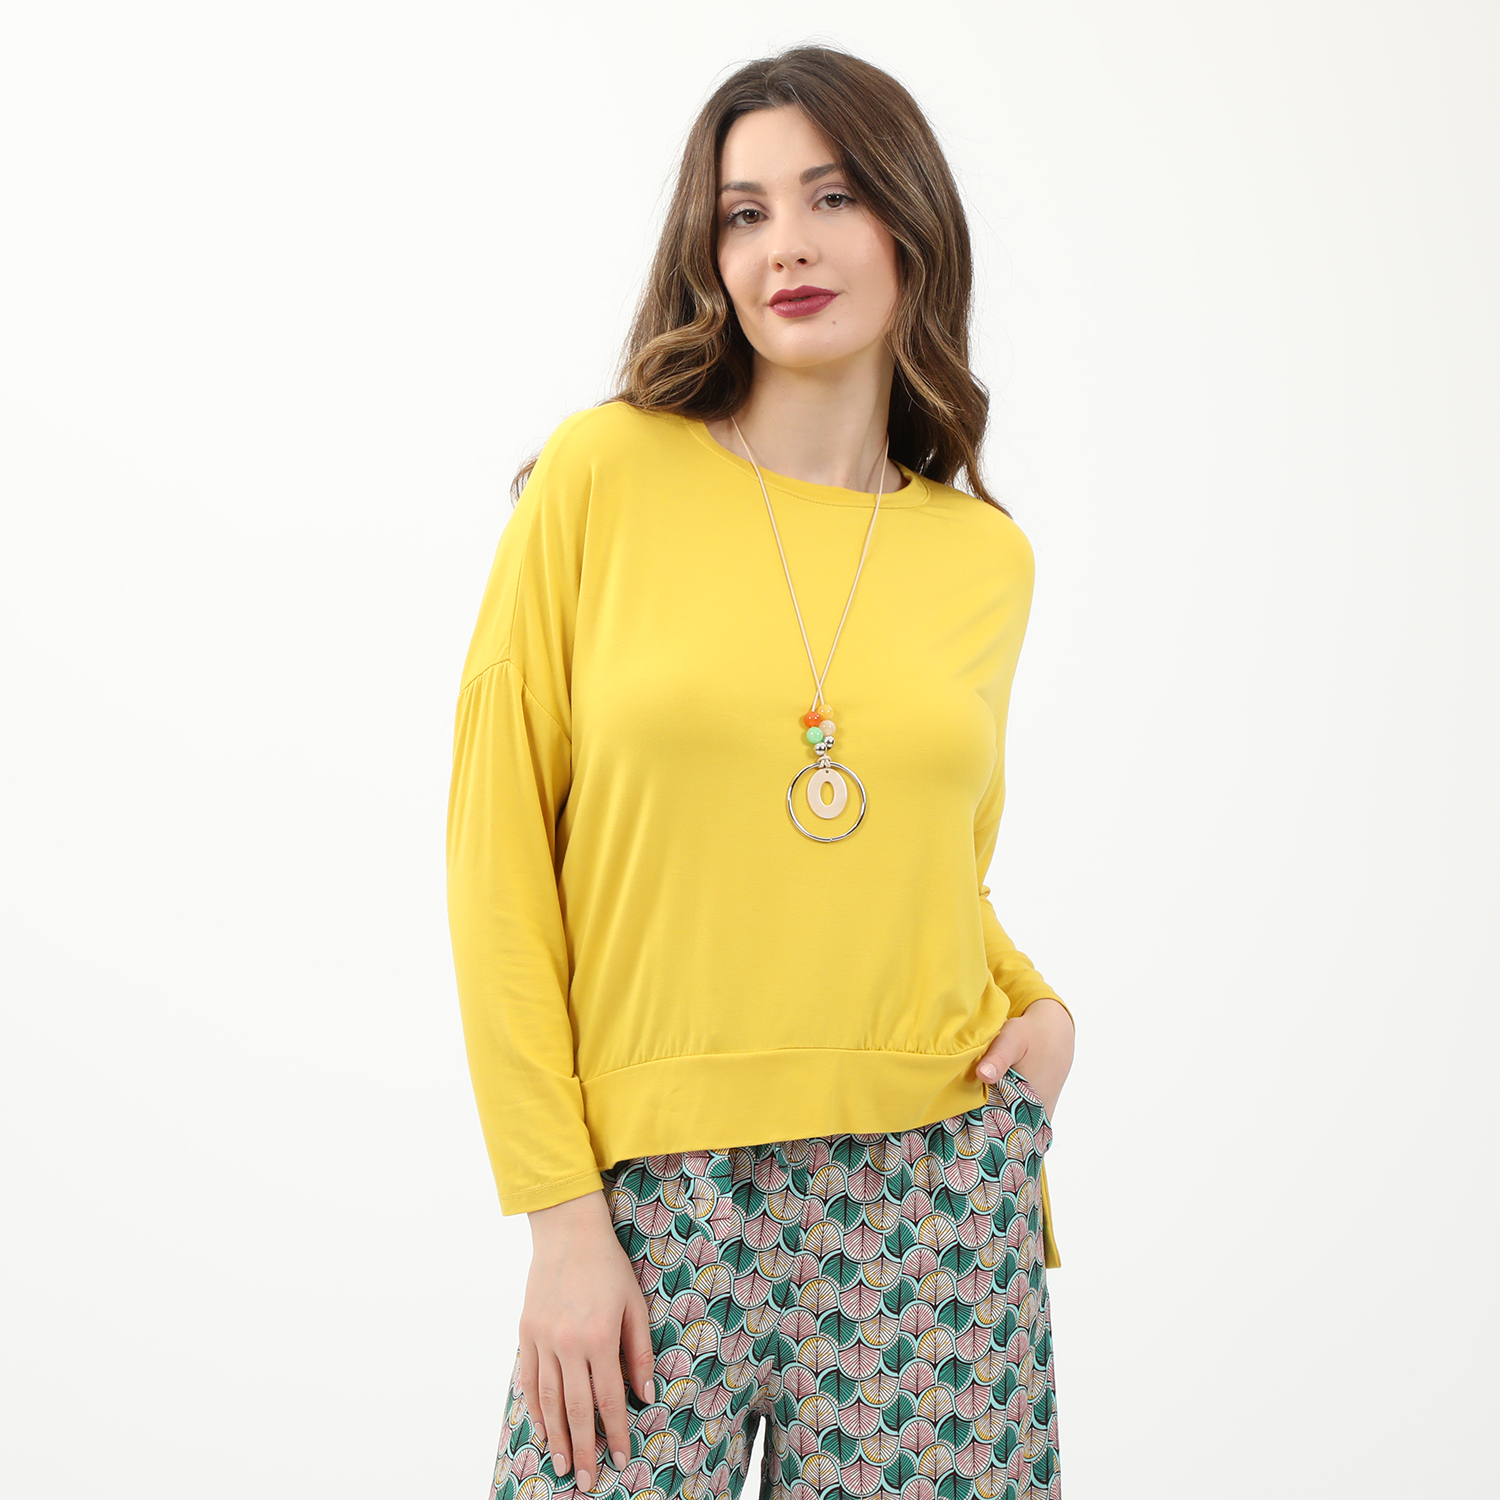 Γυναικεία/Ρούχα/Μπλούζες/Κοντομάνικες ATTRATTIVO - Γυναικεία μπλούζα και κολιέ ATTRATTIVO κιτρινο